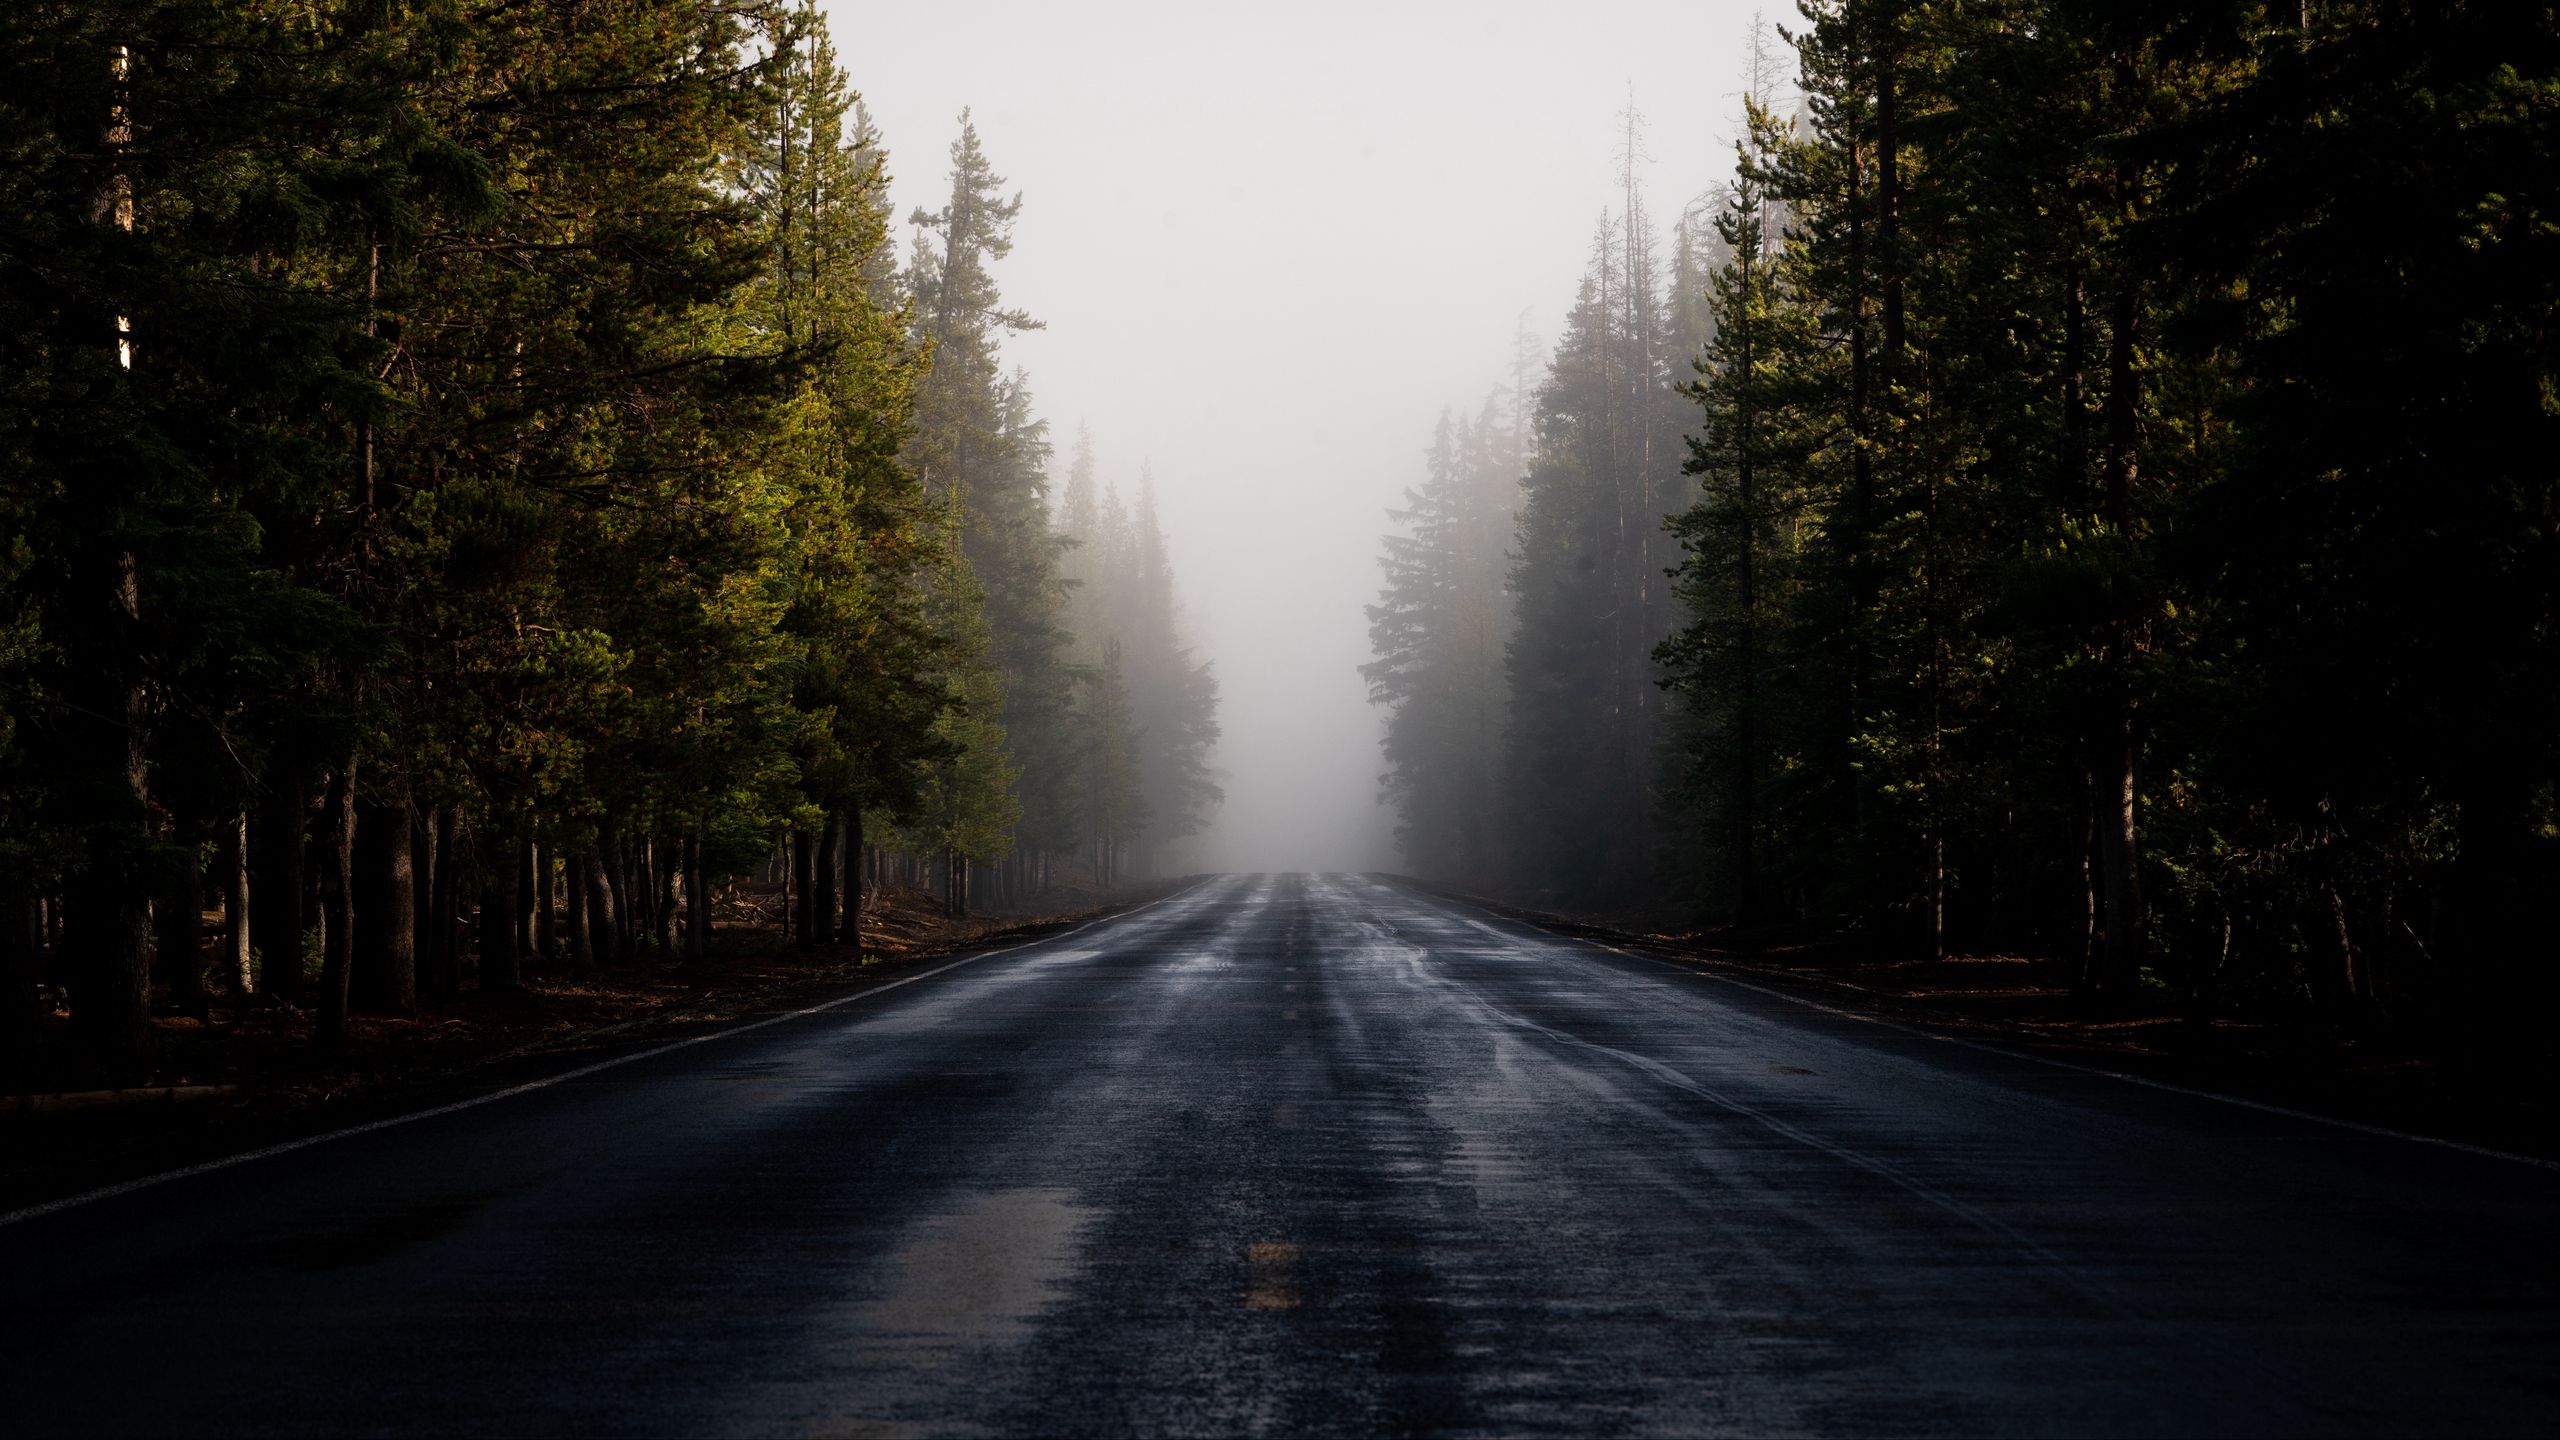 Download wallpaper 2560x1440 road, fog, forest, trees, asphalt ...